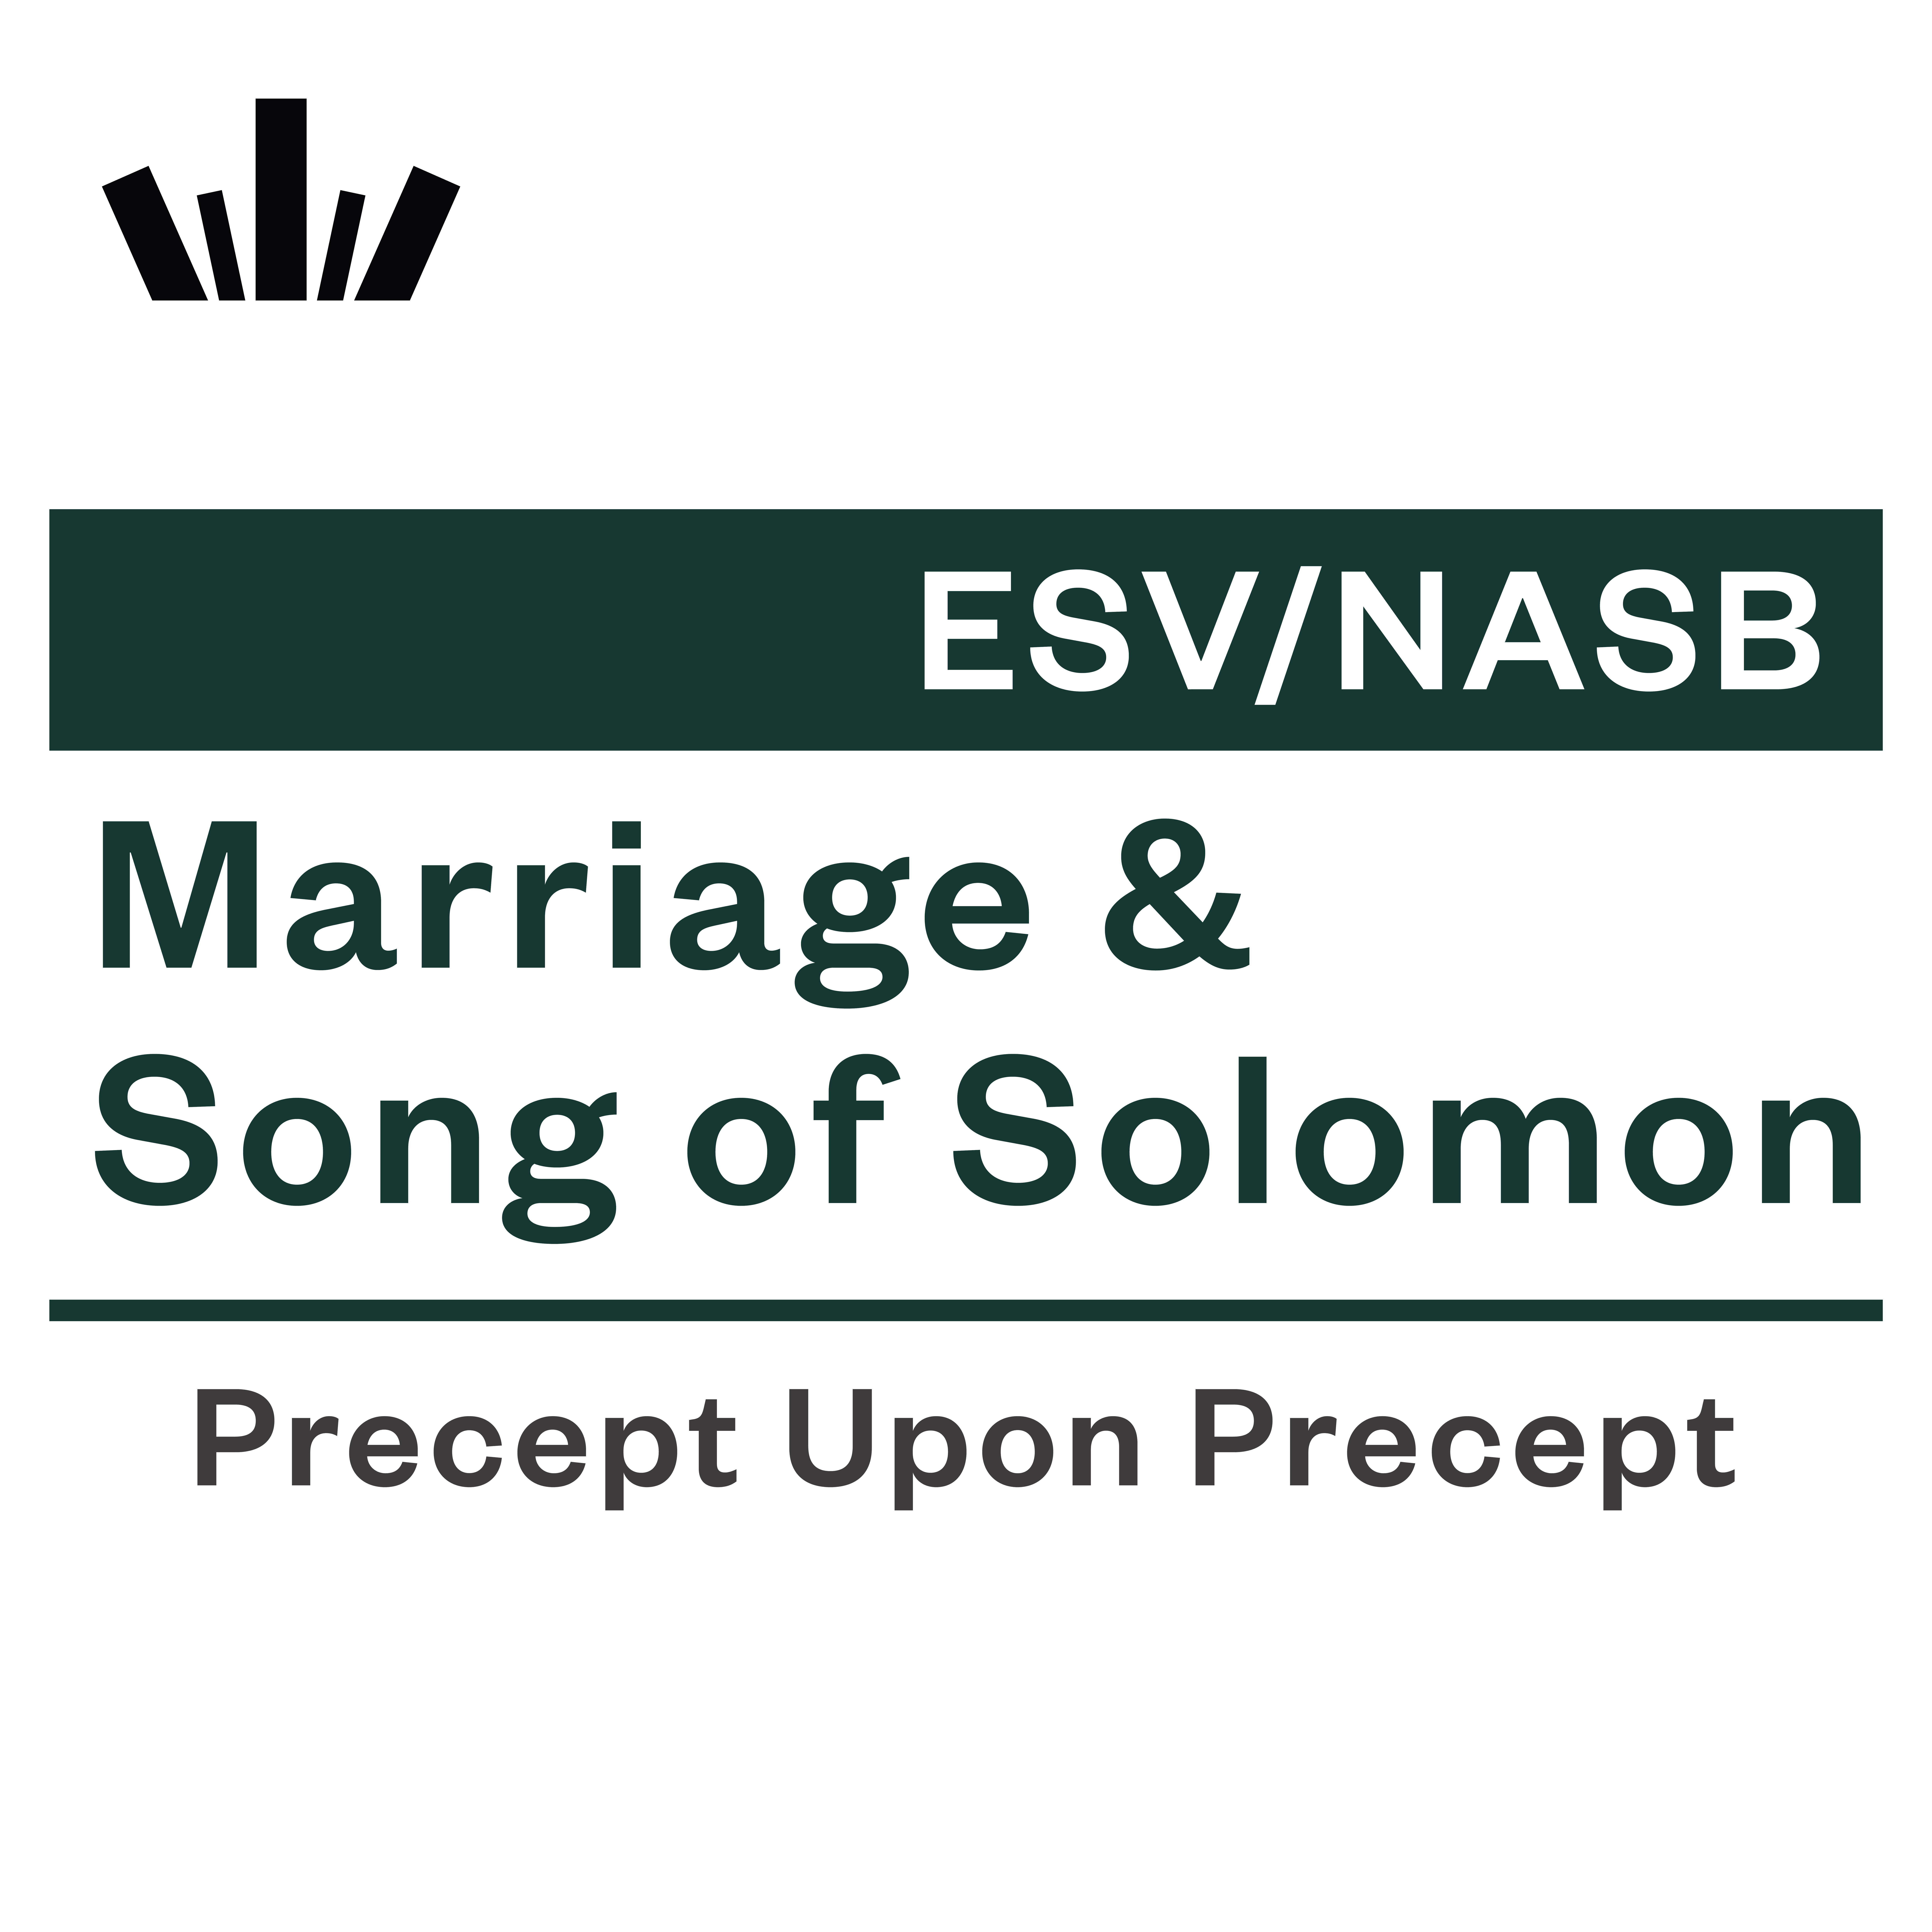 Song of Solomon Precept Upon Precept